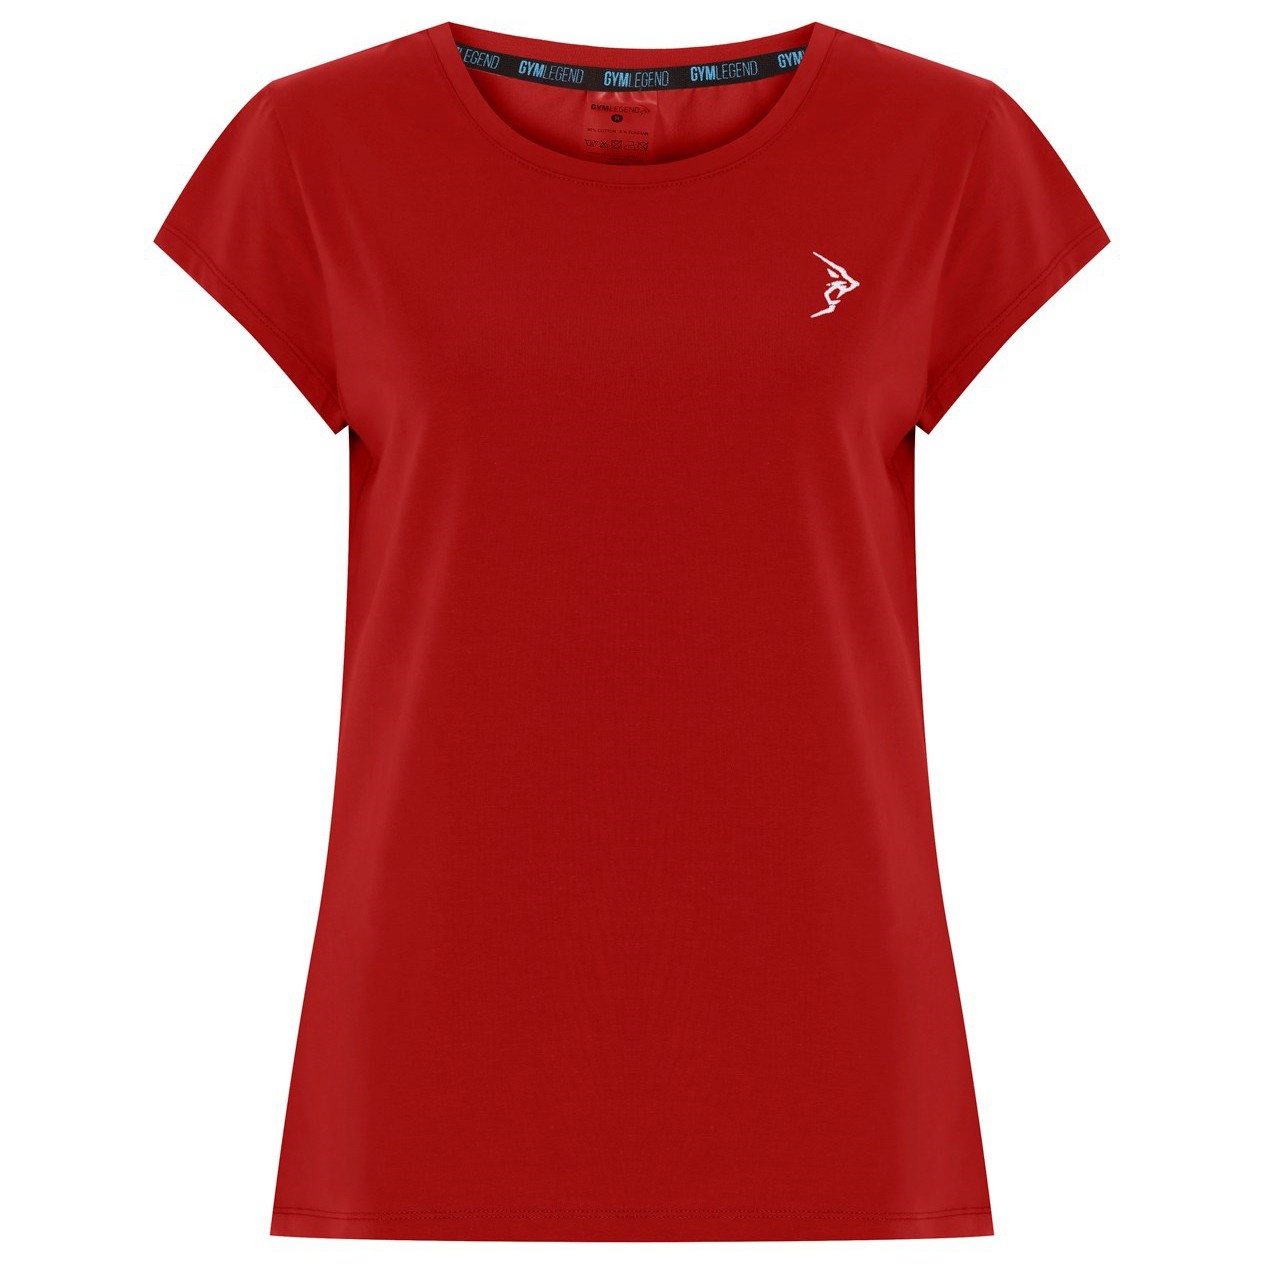 Kadın Koyu Kırmızı Süprem Kısa Kollu Basic Tişört